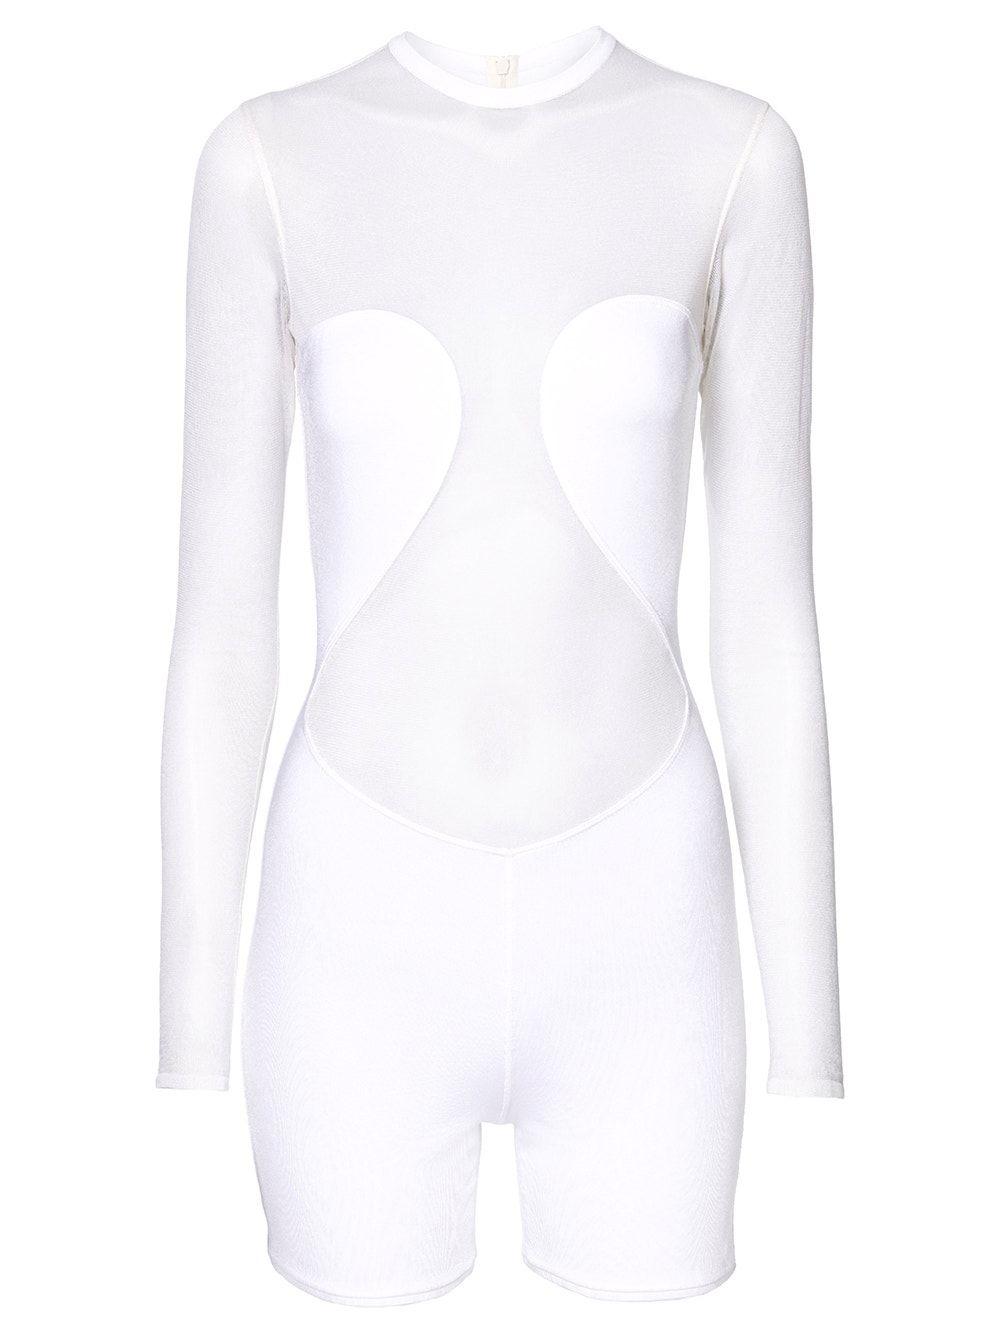 Alaïa Biker Short Sheer Bodysuit in White | Lyst